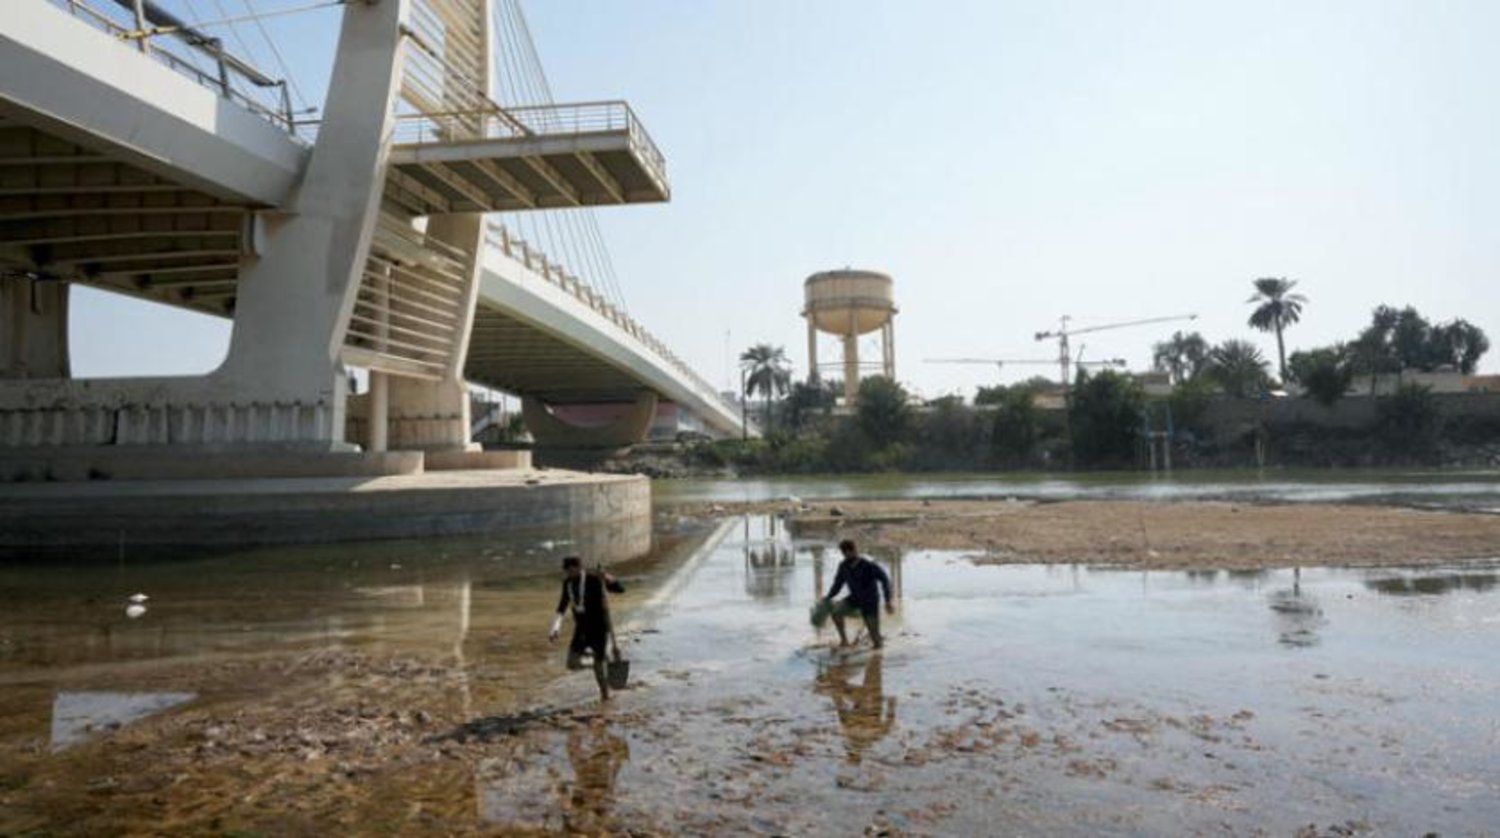 Amara şehrinde alınan görüntüler Fırat Nehri’nin sularının ne ölçüde çekildiğini gözler önüne serildi. (Reuters)